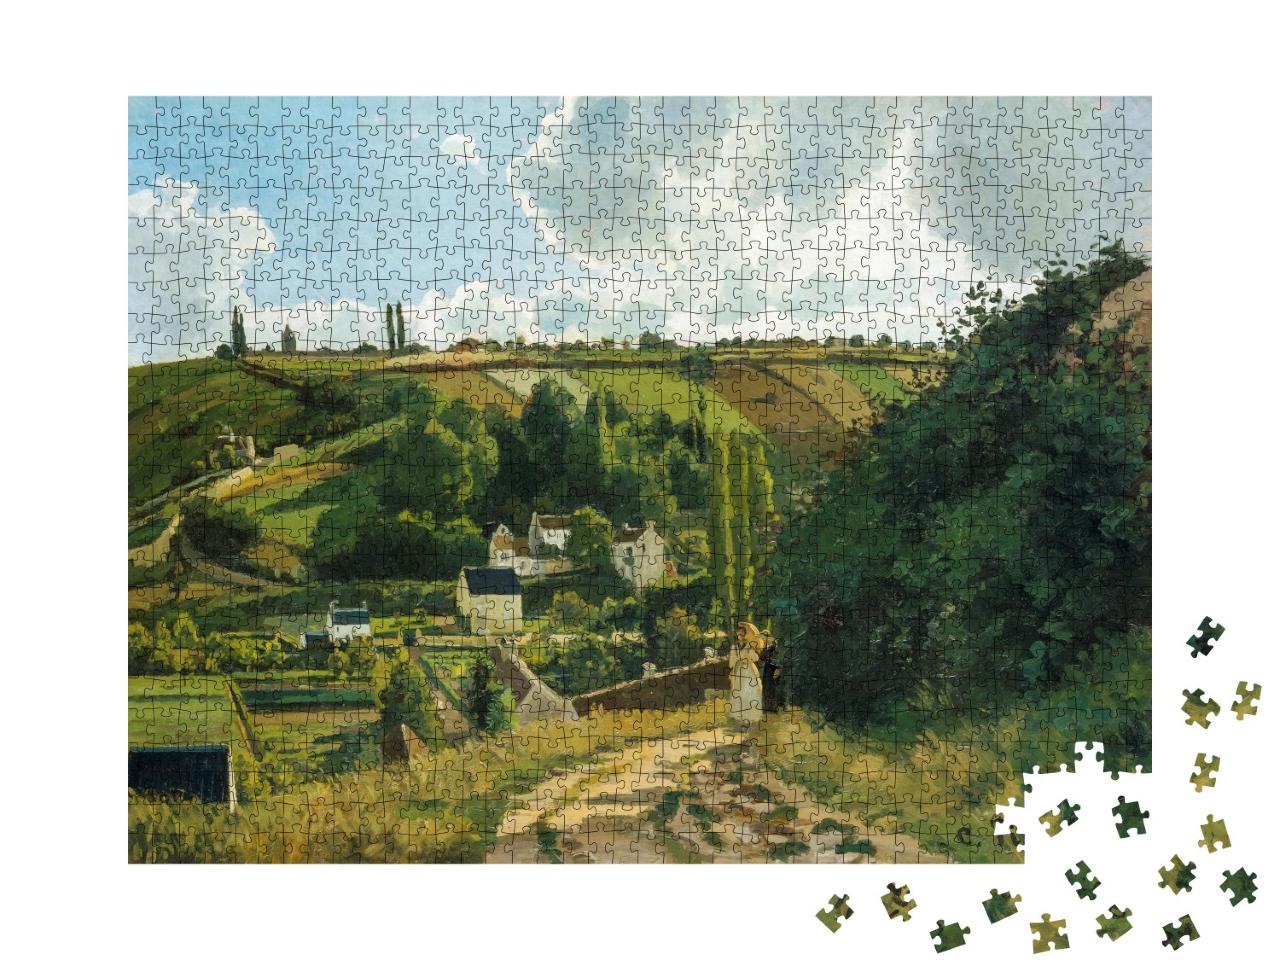 Puzzle de 1000 pièces « Camille Pissarro - Colline de Jalais, Pontoise »